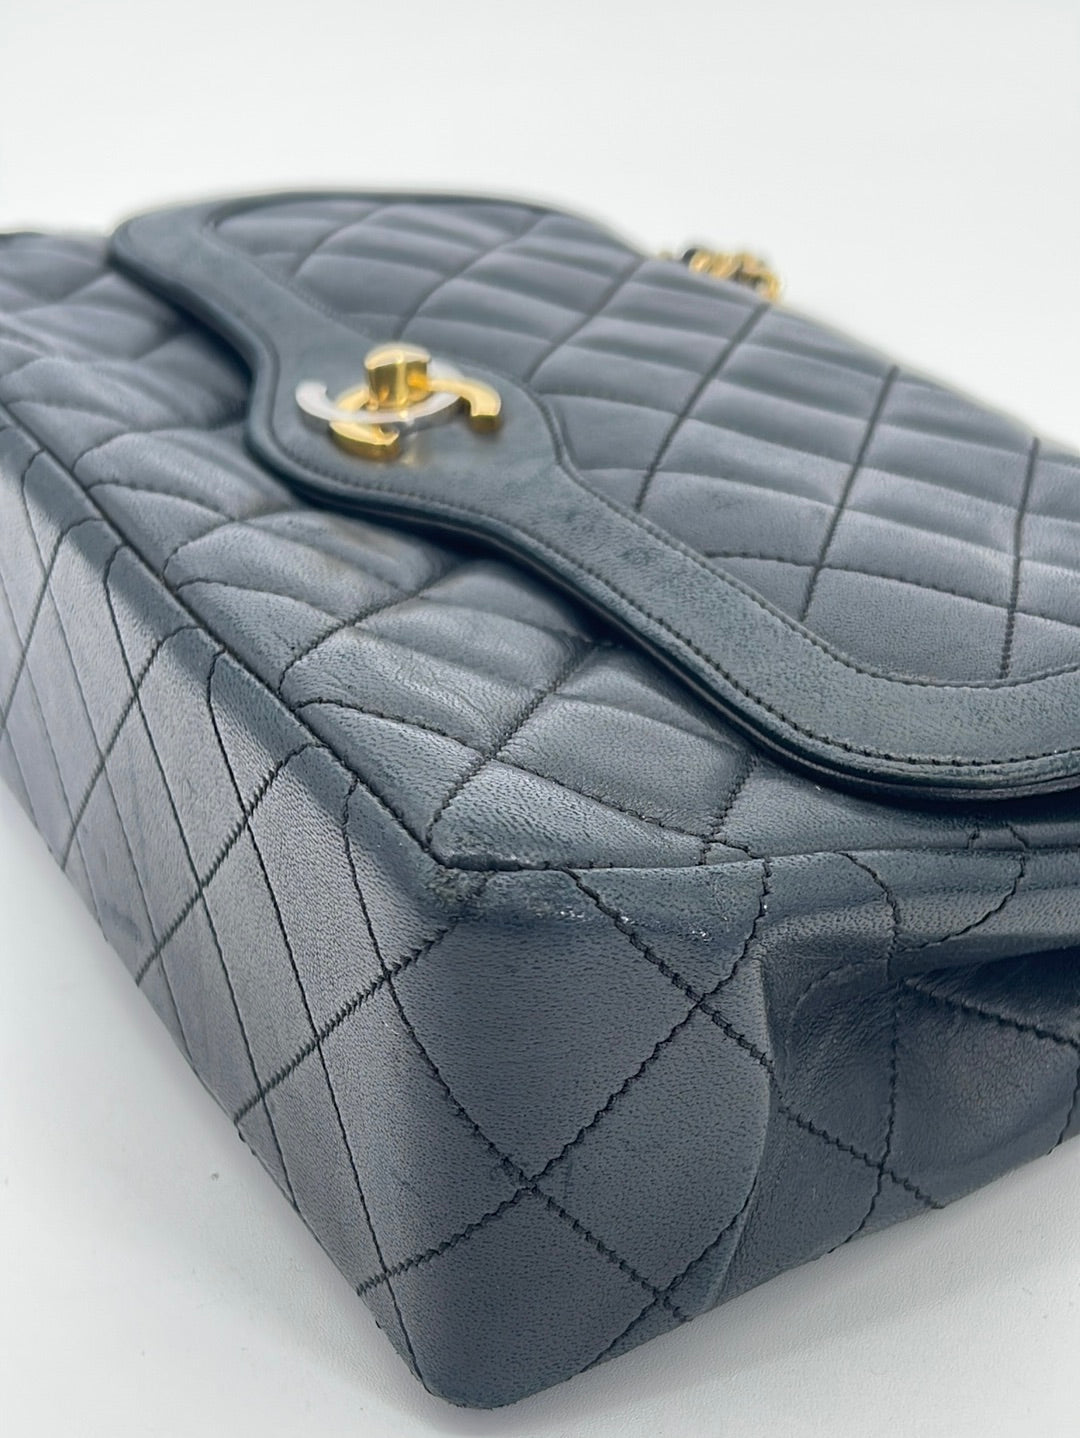 Vintage CHANEL Paris Limited Double Flap Quilted Black Lambskin Shoulder Bag HX3B6DR 063023